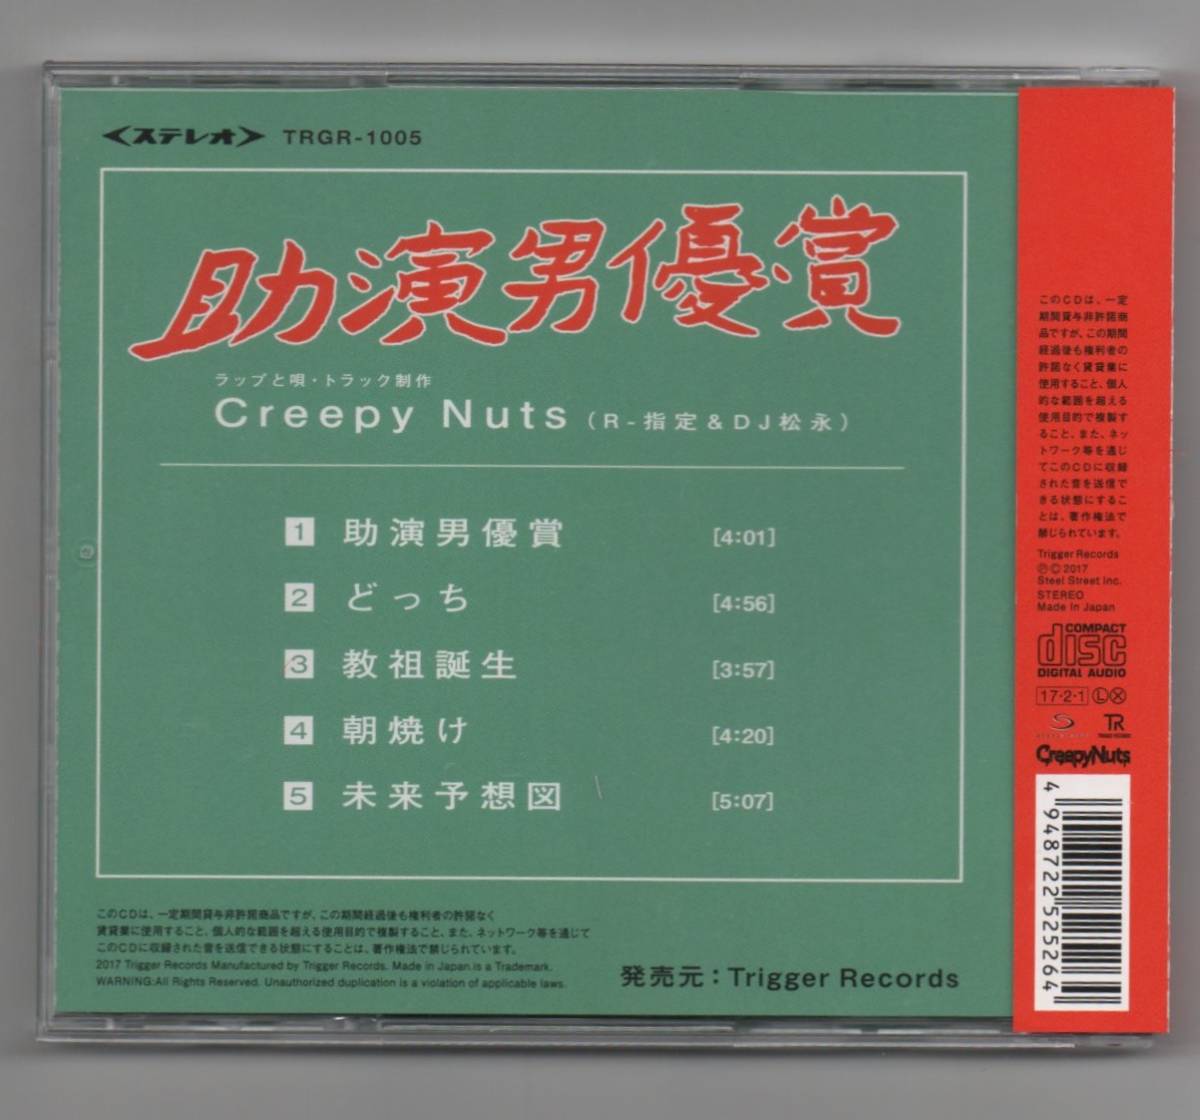 ∇ 美品 クリーピーナッツ Creepy Nuts 5曲入 2017年 CD/映画 たまえのスーパーはらわた 主題歌 助演男優賞 収録/R-指定 DJ松永_画像2